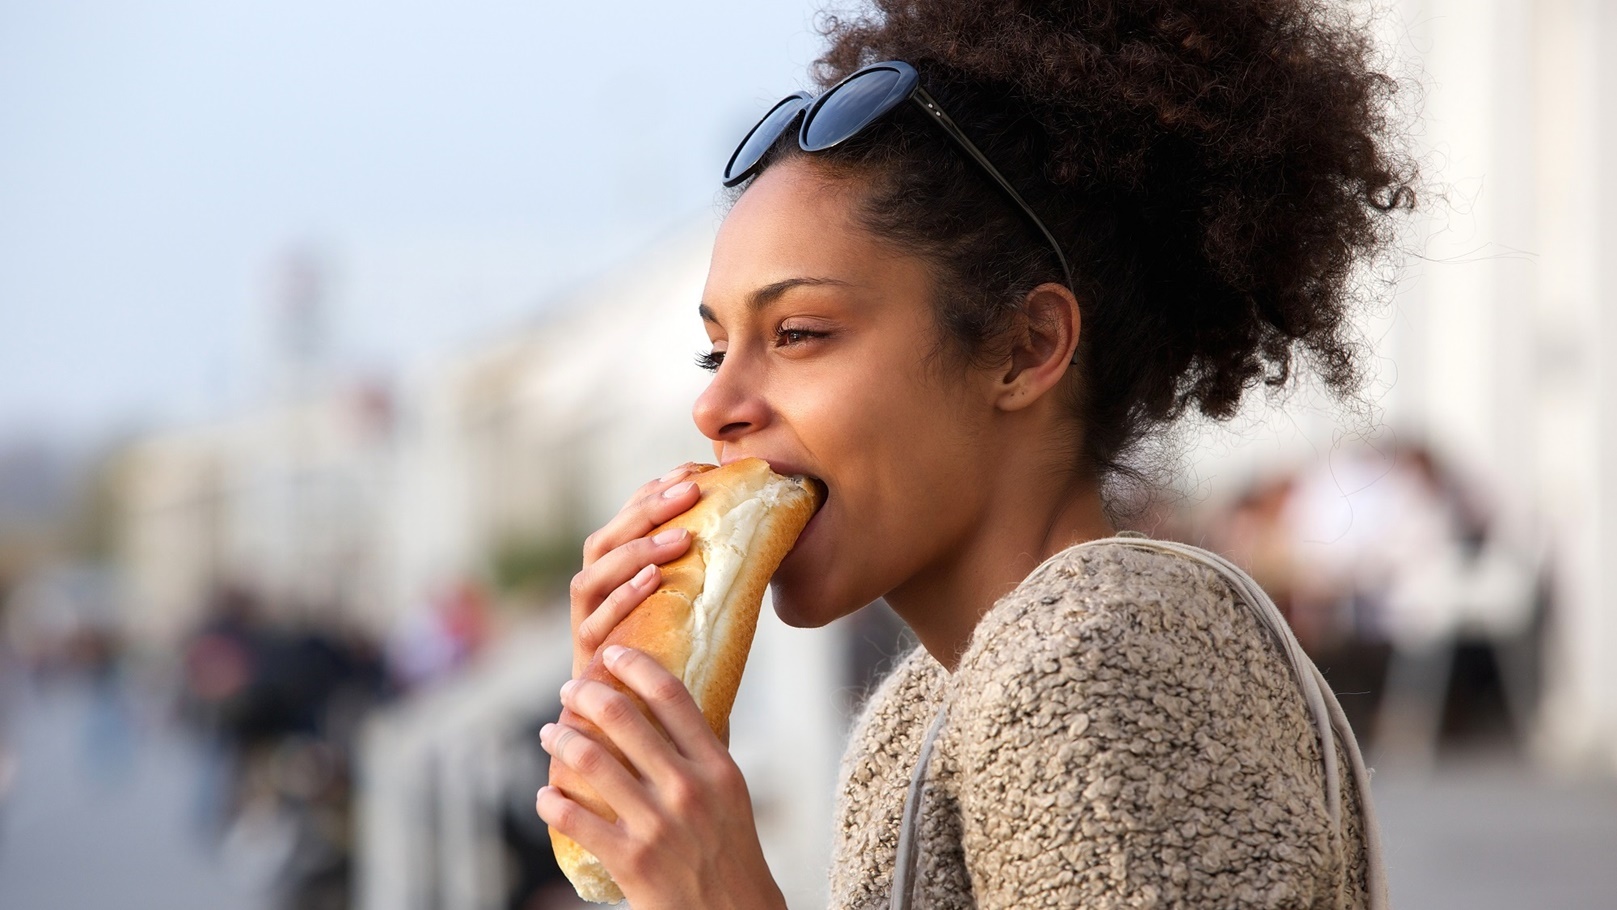 beautiful-young-woman-eating-sandwich-outdoors-2021-08-26-23-05-06-utc